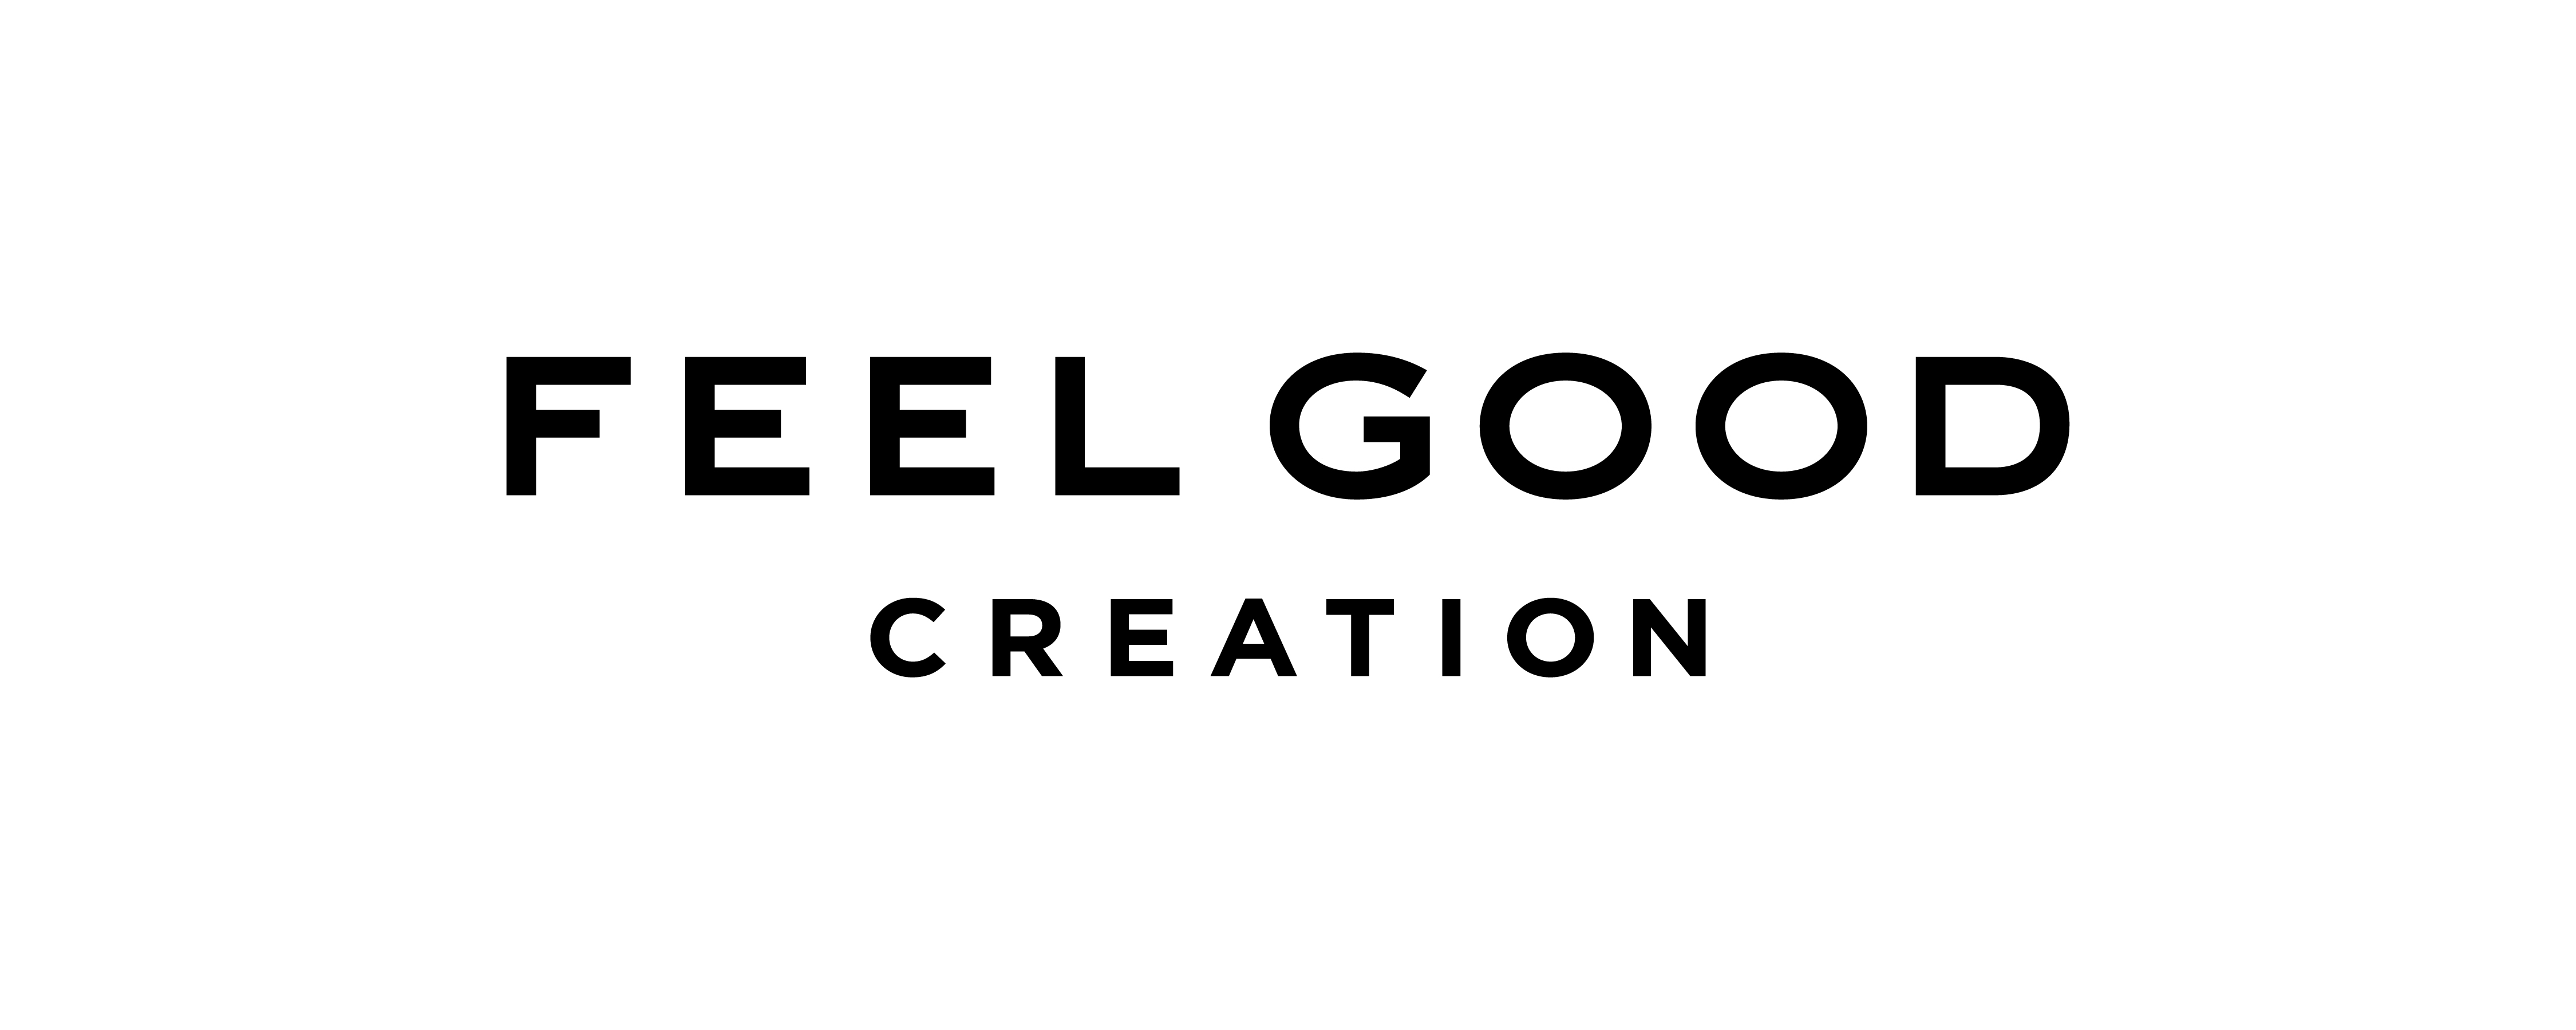 株式会社FEEL GOOD CREATION